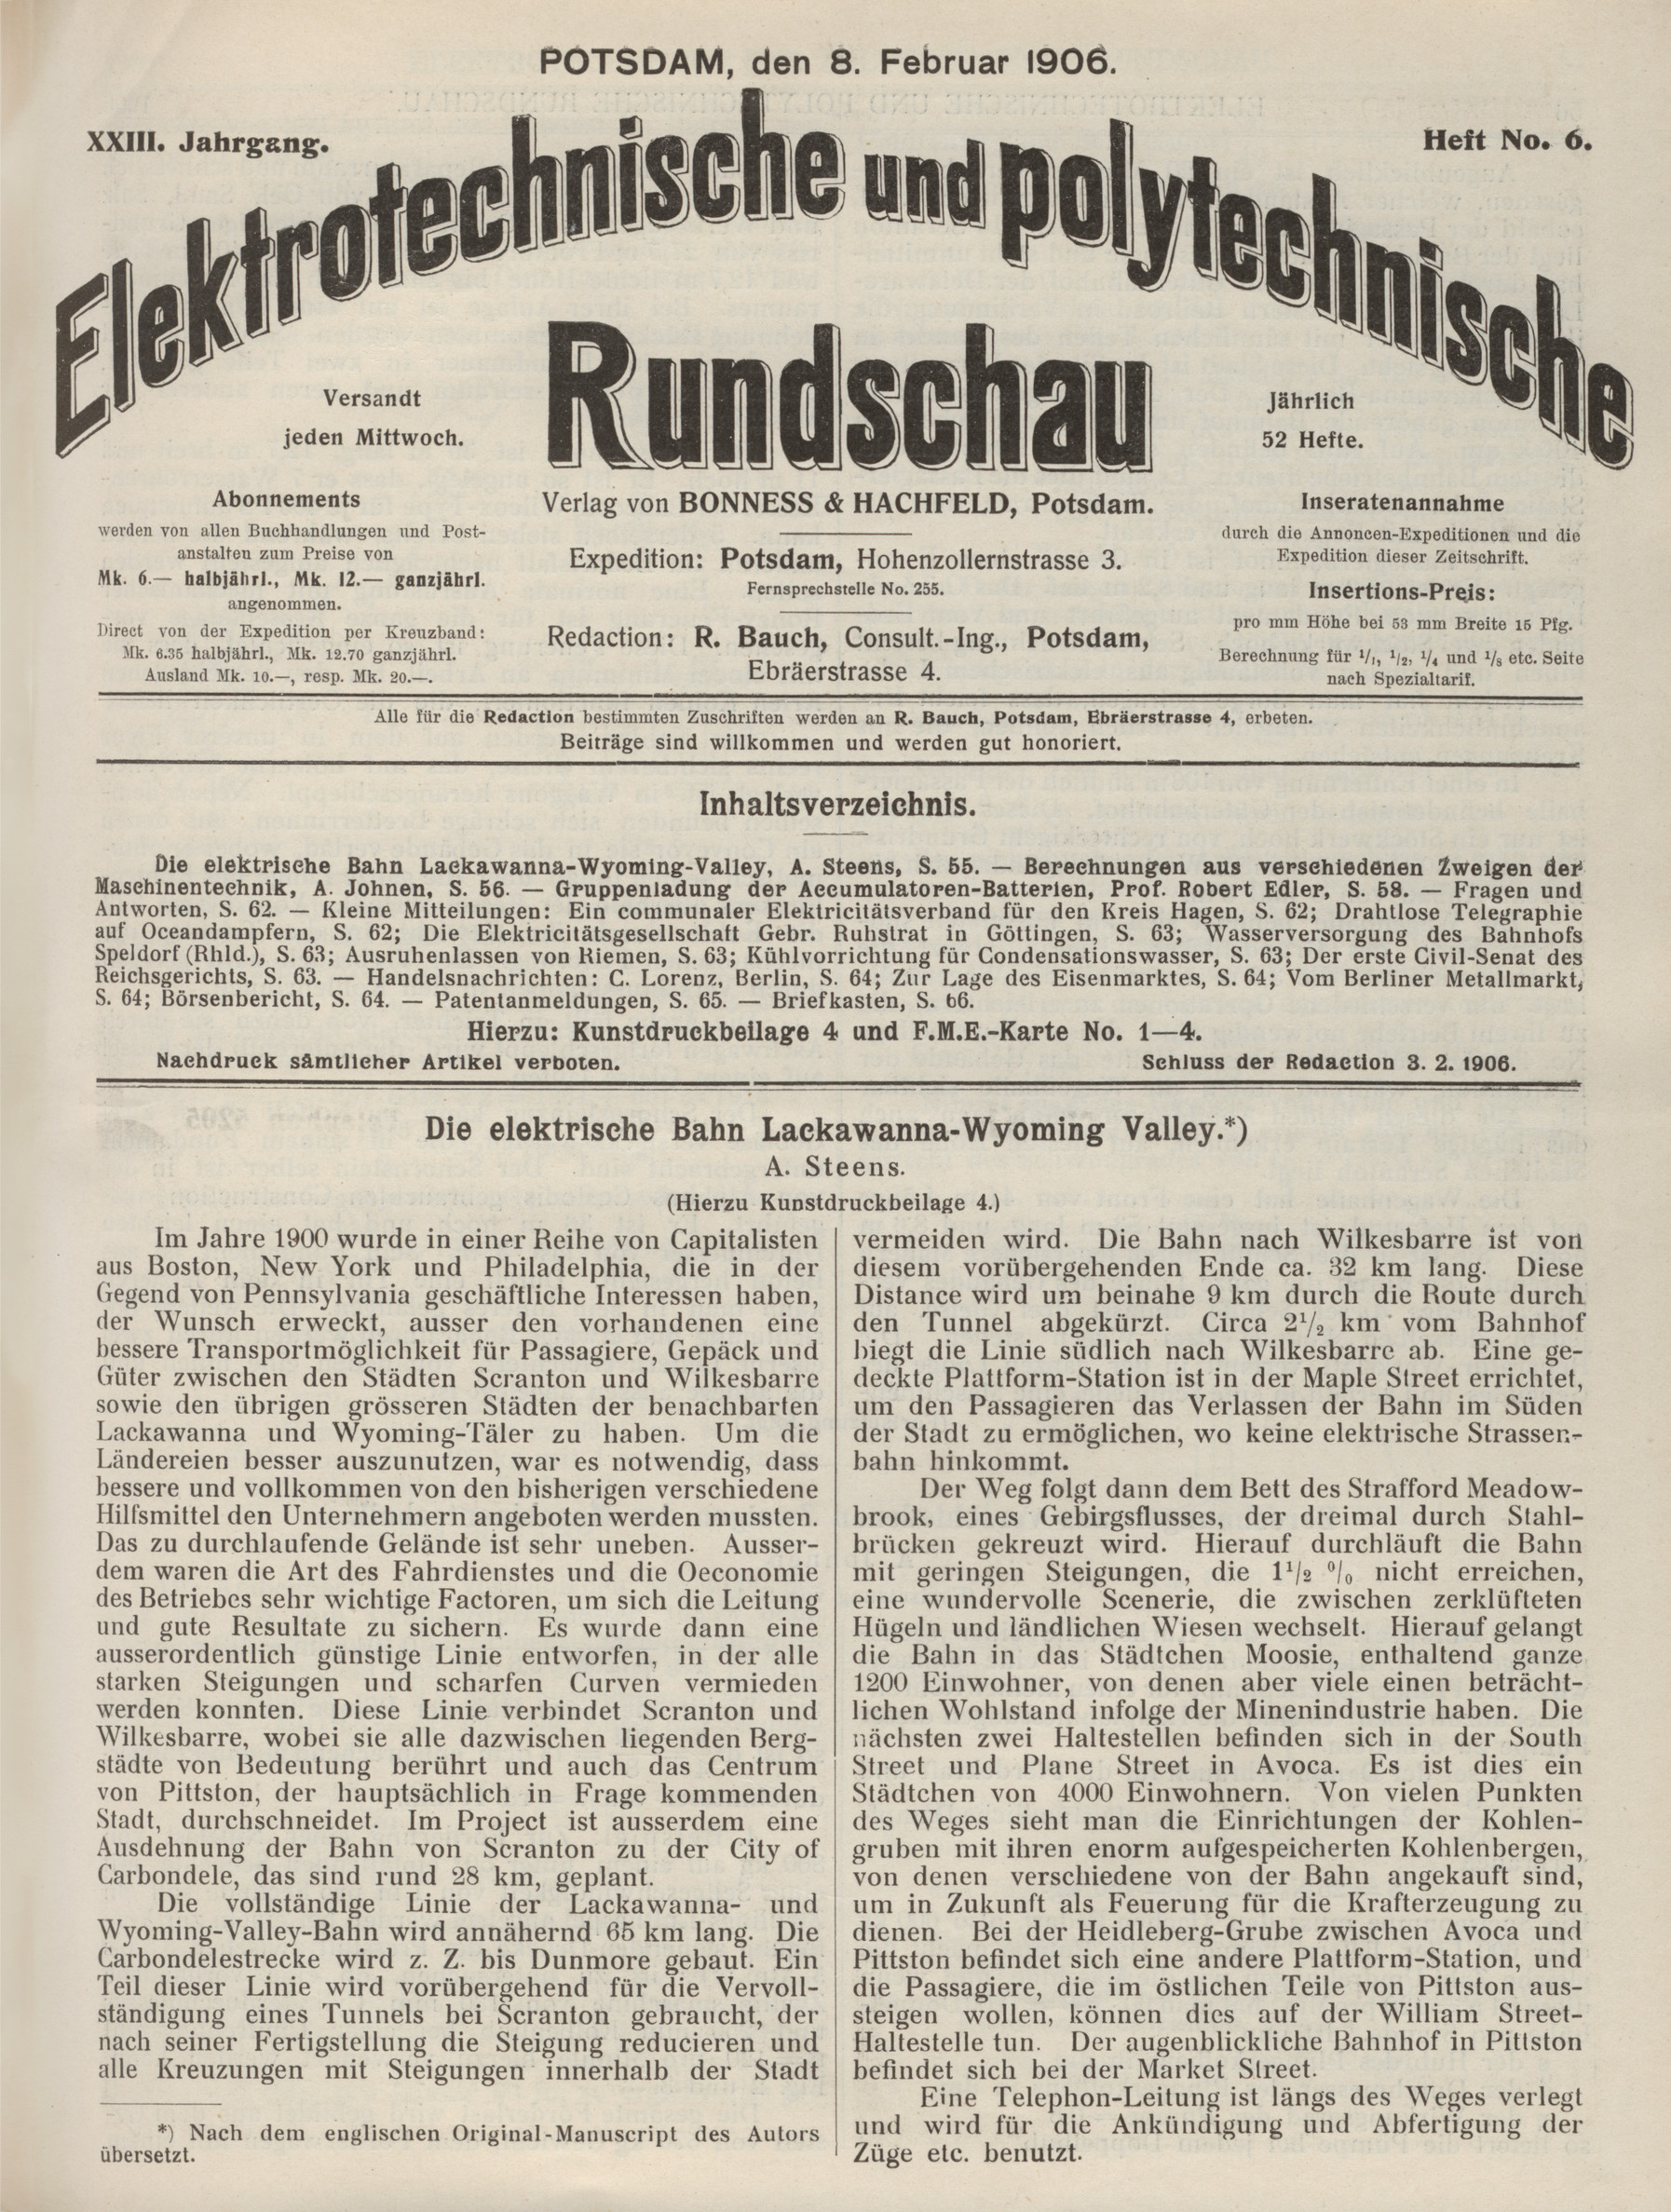 Elektrotechnische und polytechnische Rundschau, XXIII. Jahrgang, Heft No. 6